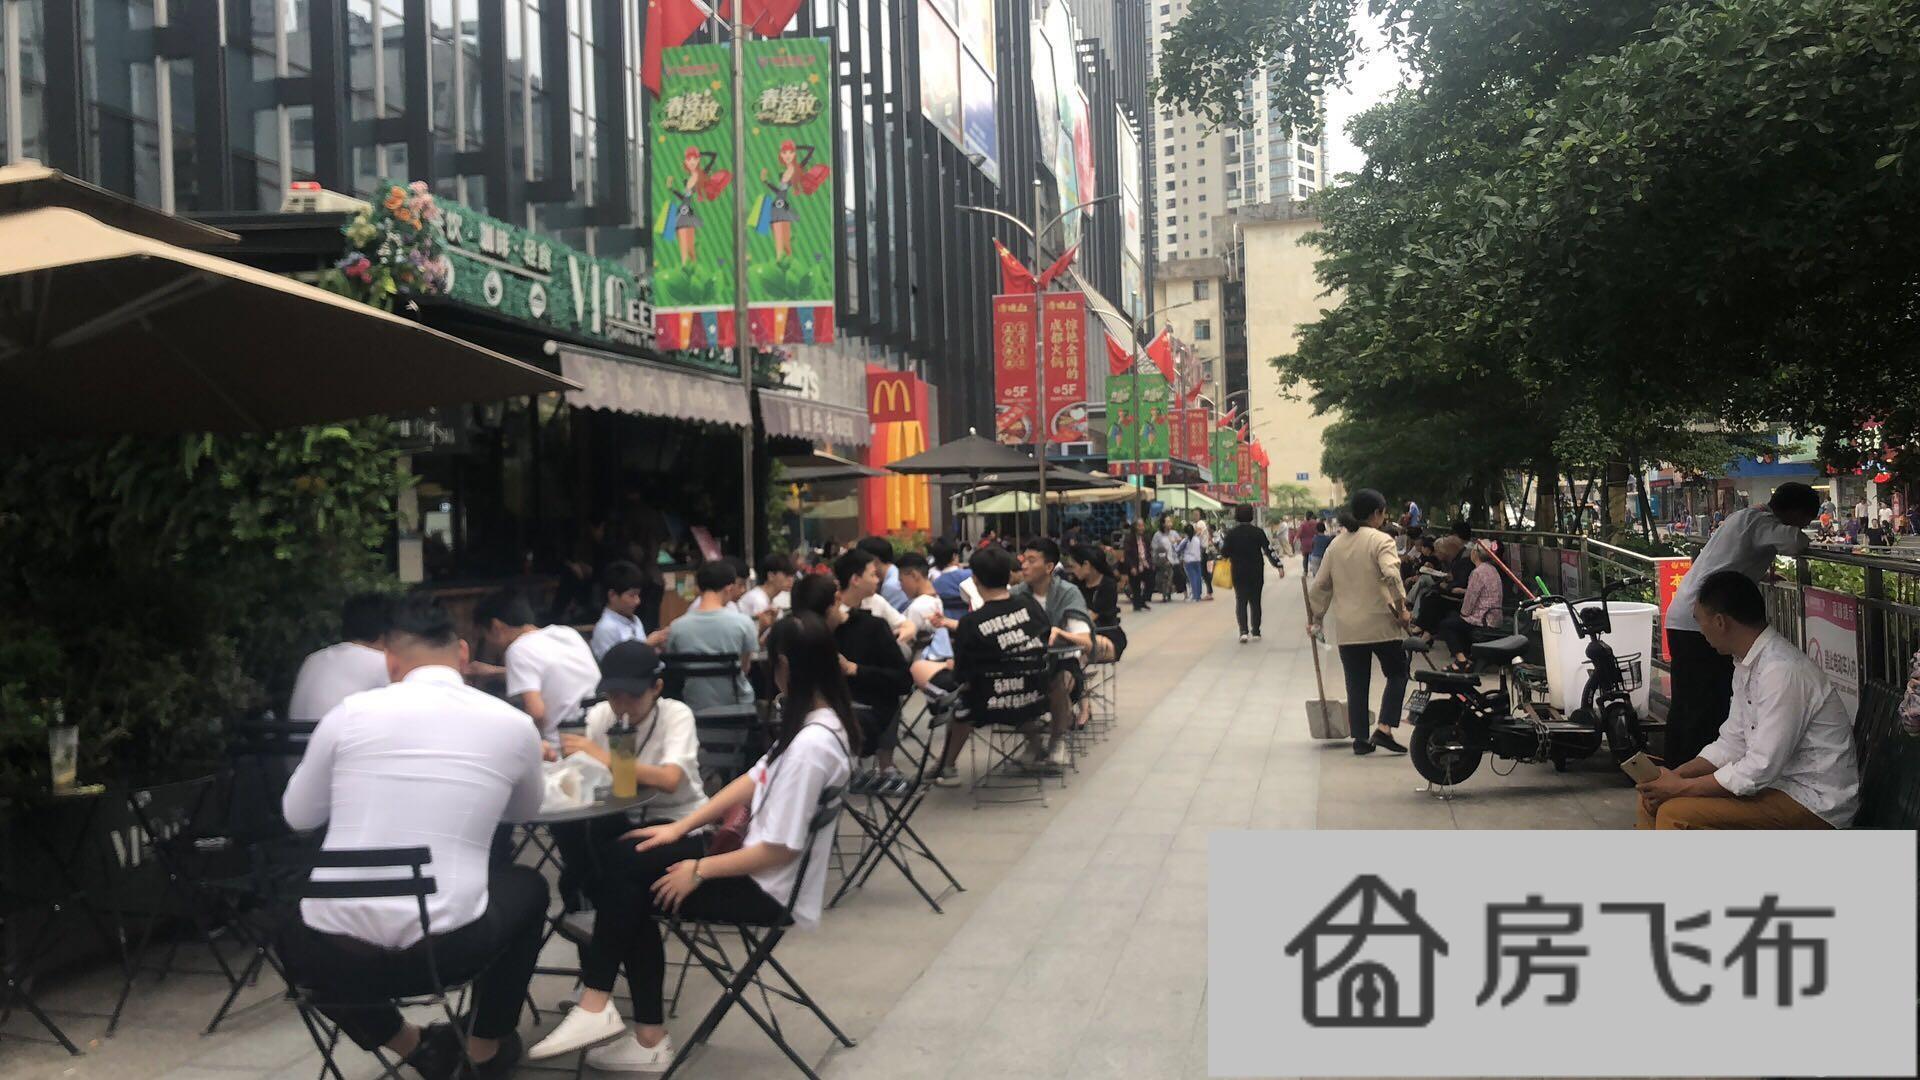 (出租) 草埔福安广场沿街 除奶茶 烧烤 其他的业态不限制